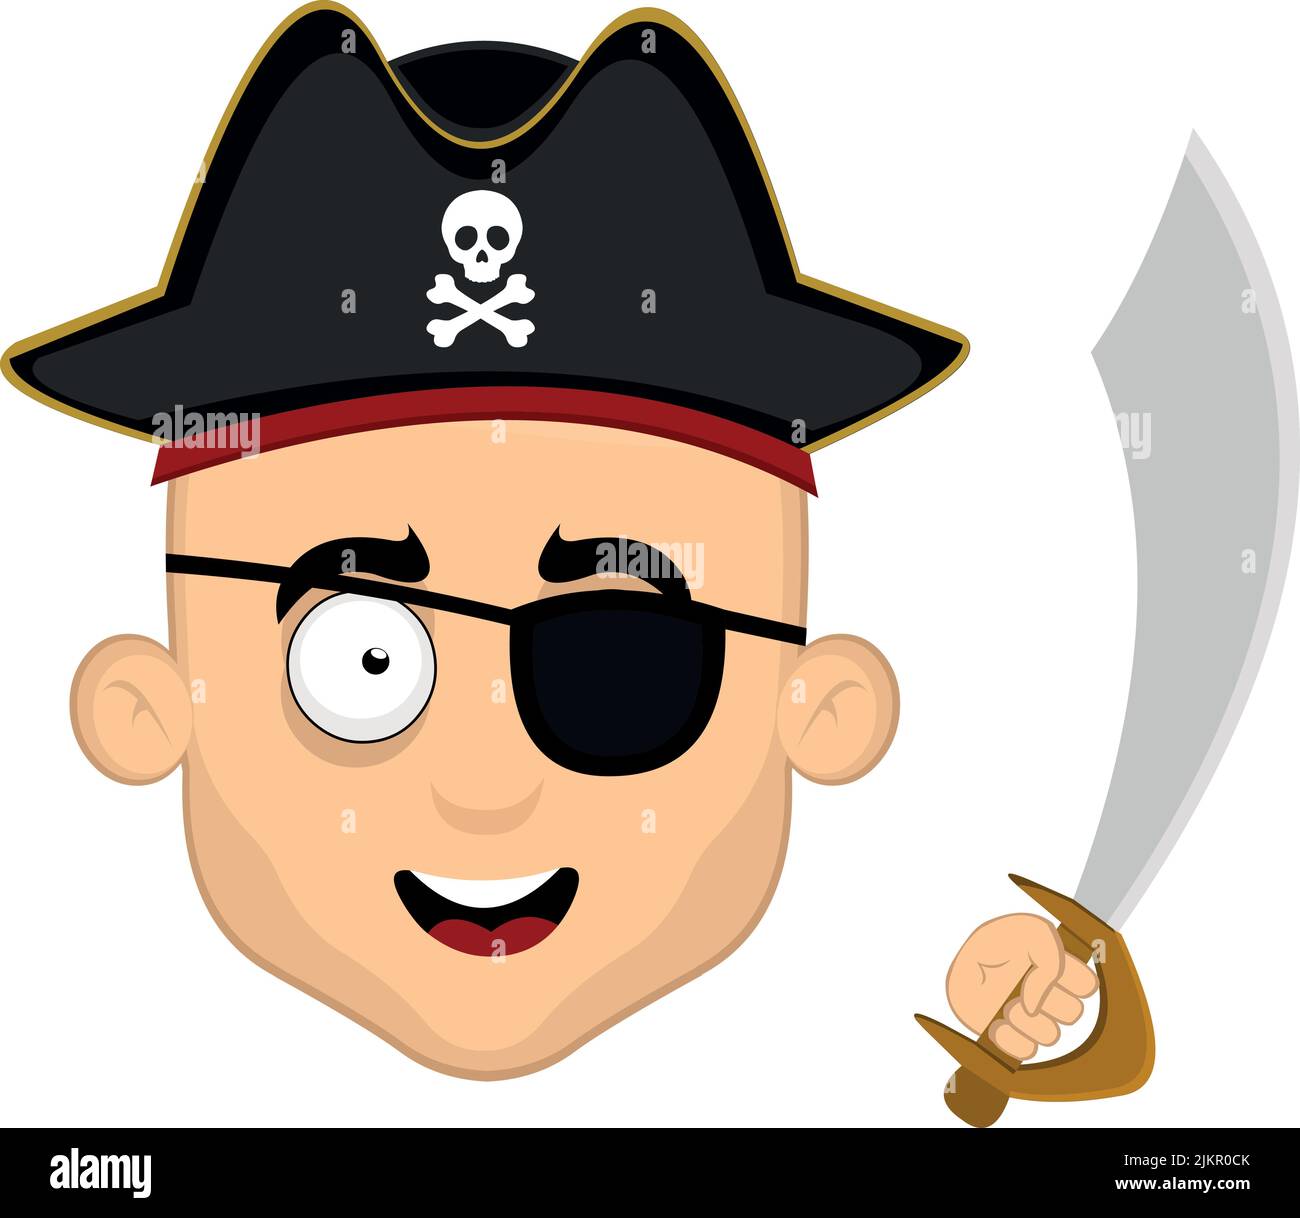 Vektor-Illustration des Gesichts eines Cartoon-Piraten mit einem Hut, Augenklappe und einem Schwert in der Hand Stock Vektor